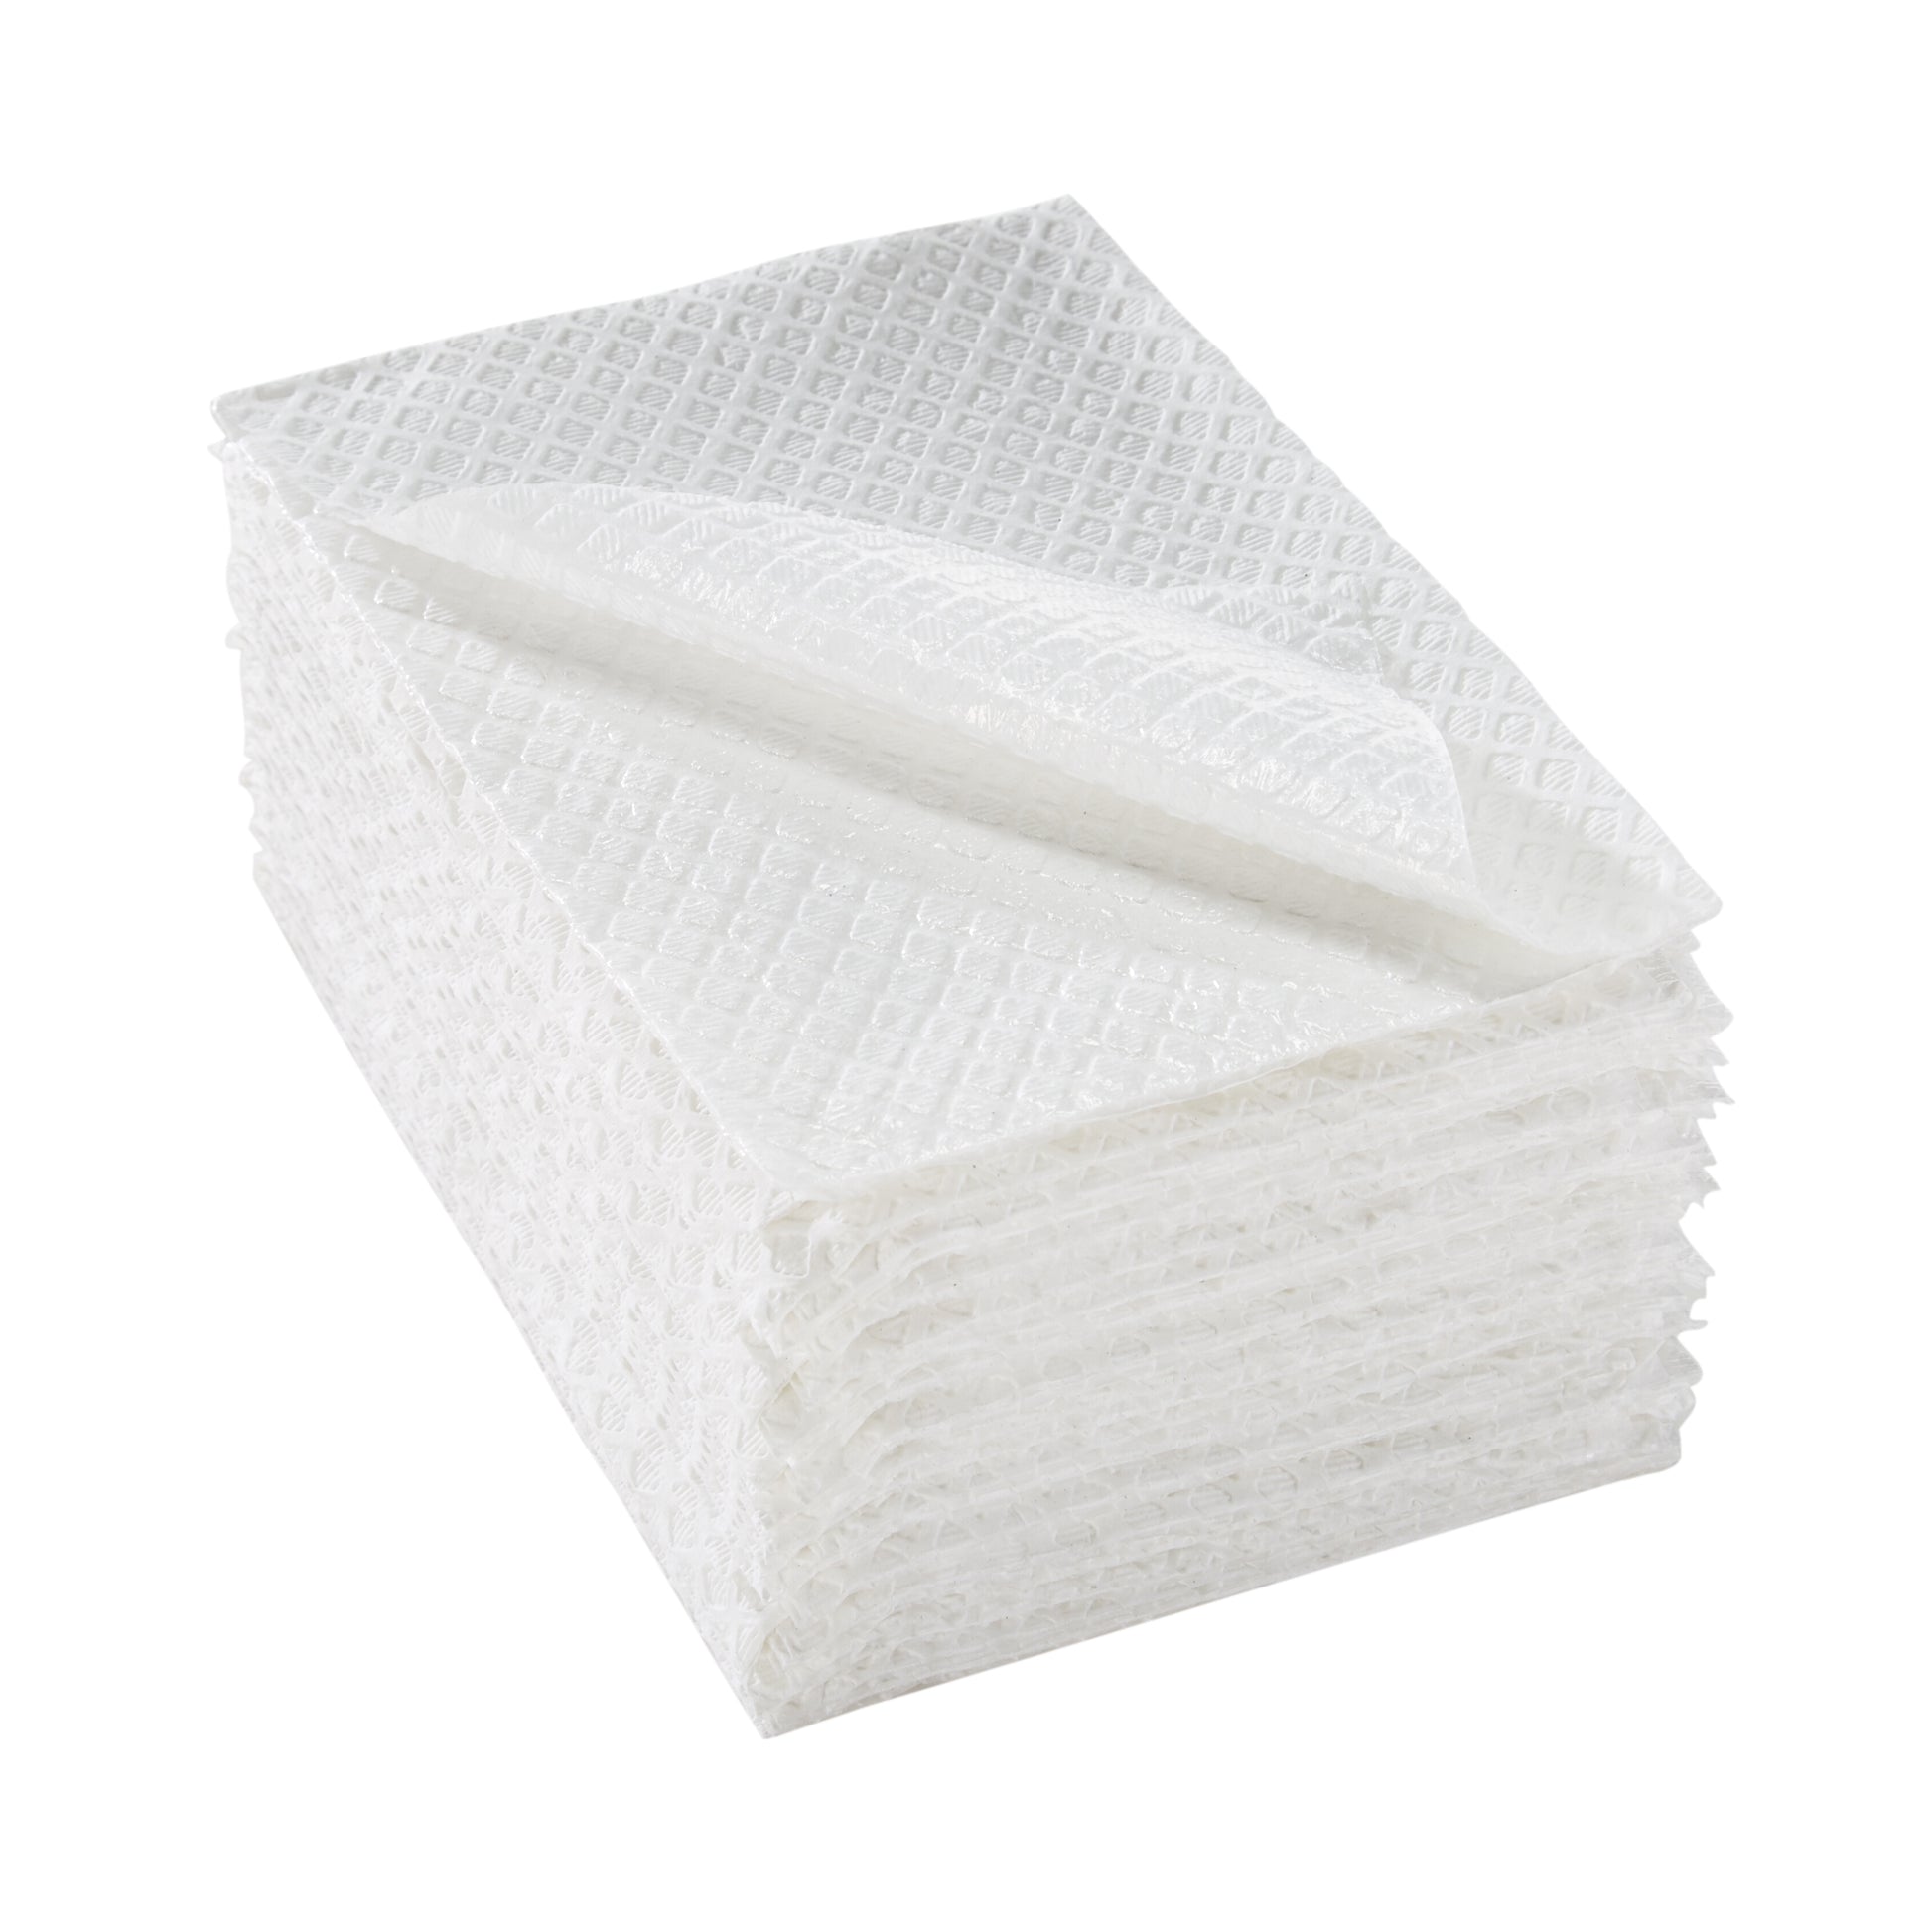 Mckesson Nonsterile White Procedure Towel, 13 X 18 Inch, Sold As 500/Case Mckesson 18-10865